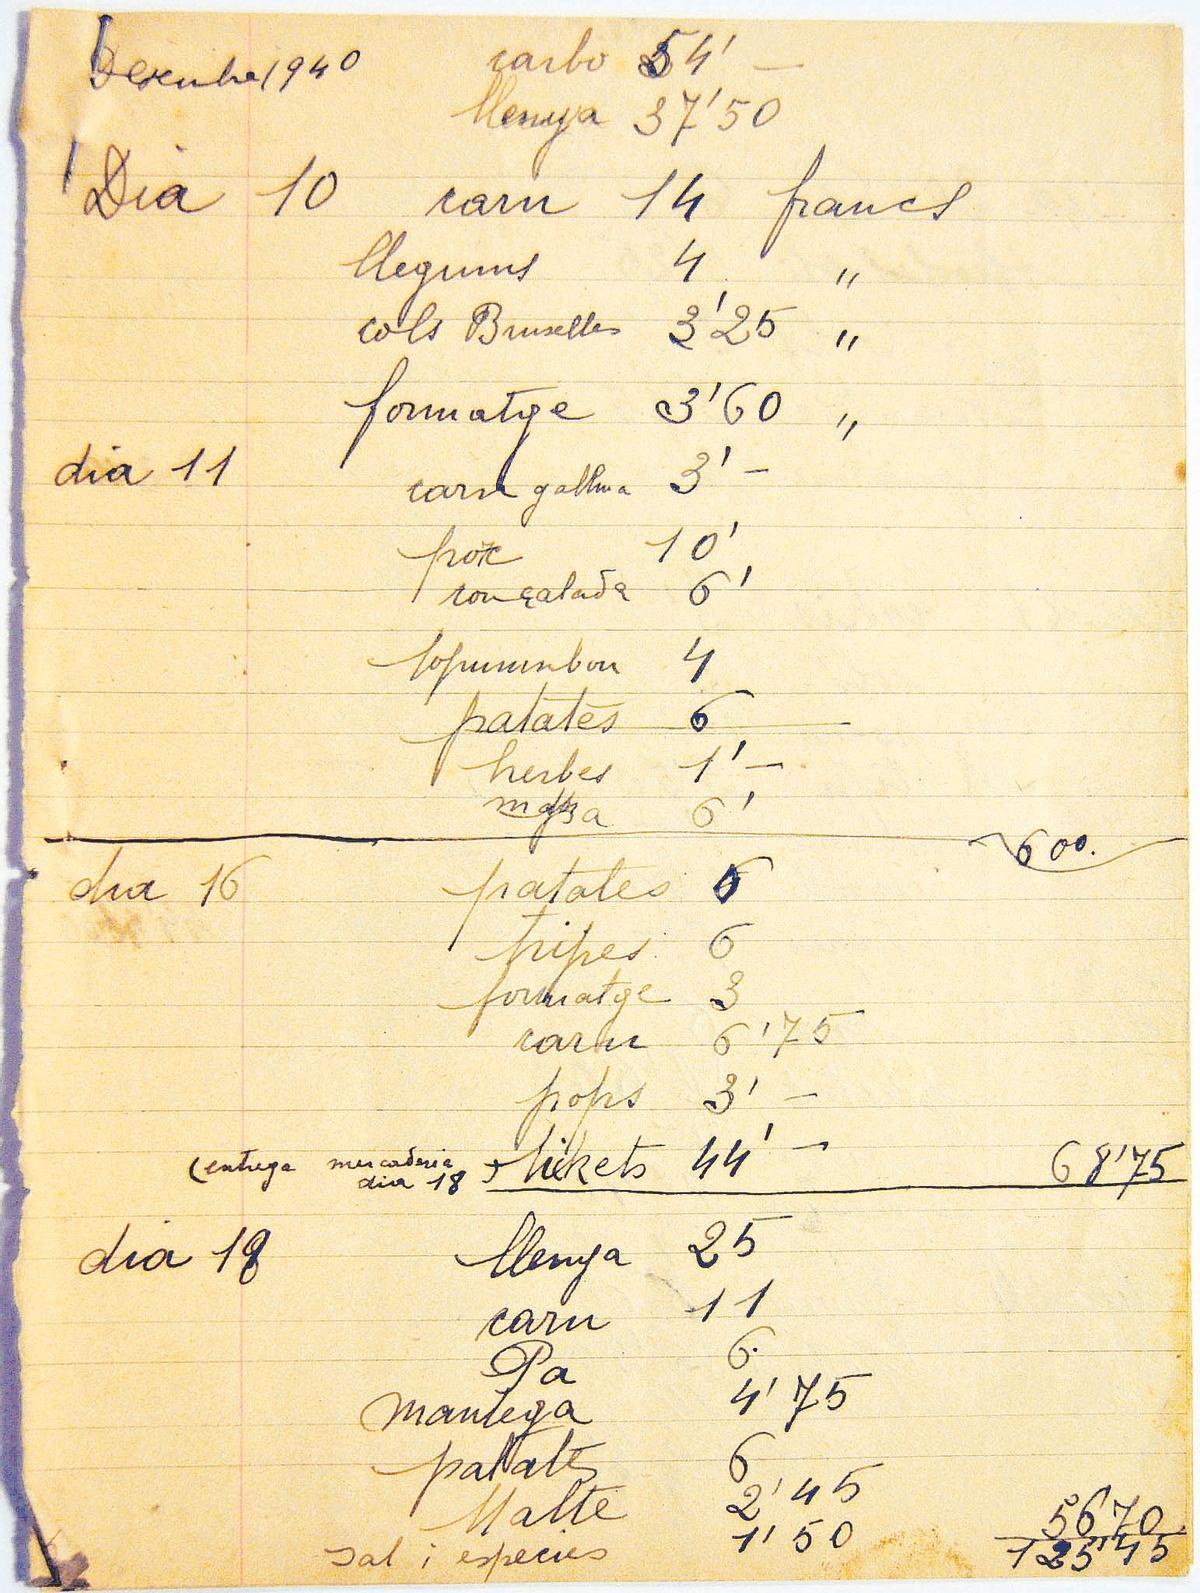 L’arxiu de Dolors Cos Rouget conserva llistats de despeses, elements essencials per entendre l’extrema precarietat de la vida quotidiana. En els arxius d’ells, mai consten.